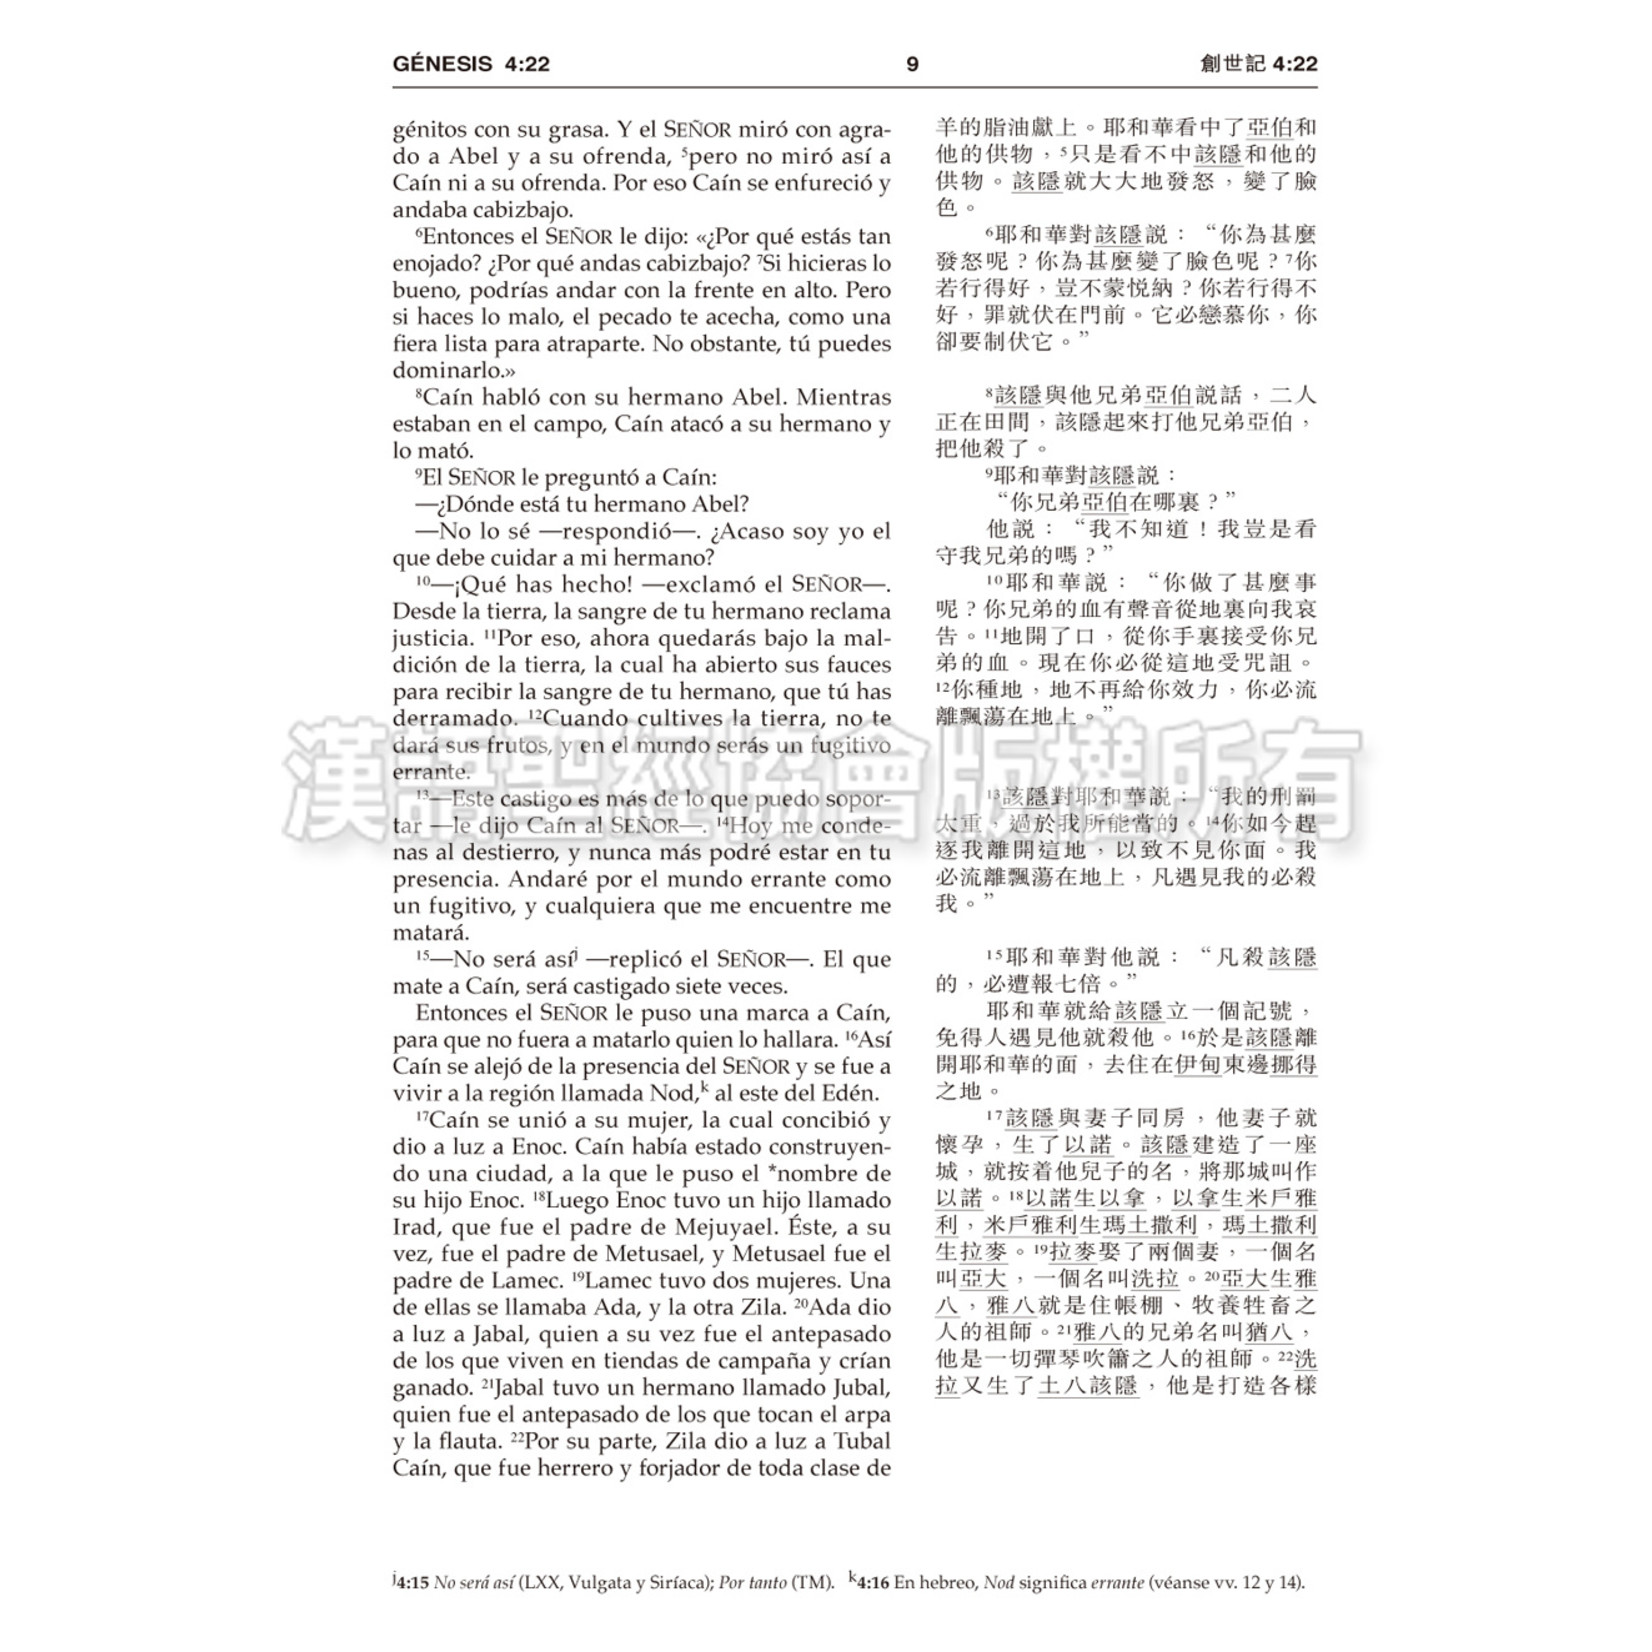 漢語聖經協會 Chinese Bible International 聖經．中西對照（和合本／NVI）輕便本．皮面金邊（繁體）